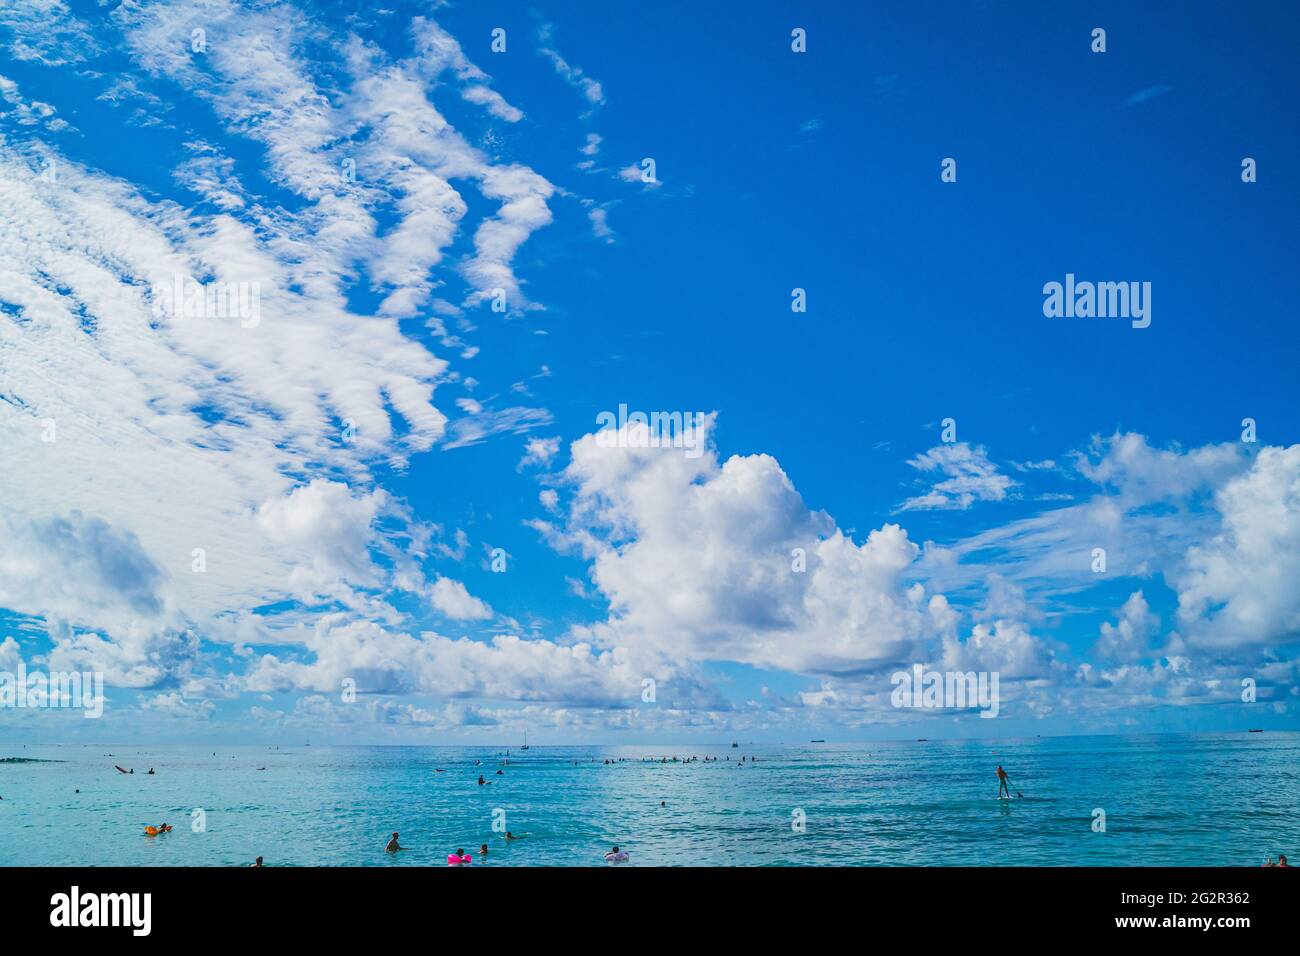 Oahu Hawaii persone godere Waikiki in acque turchesi contro cielo e nuvole Foto Stock